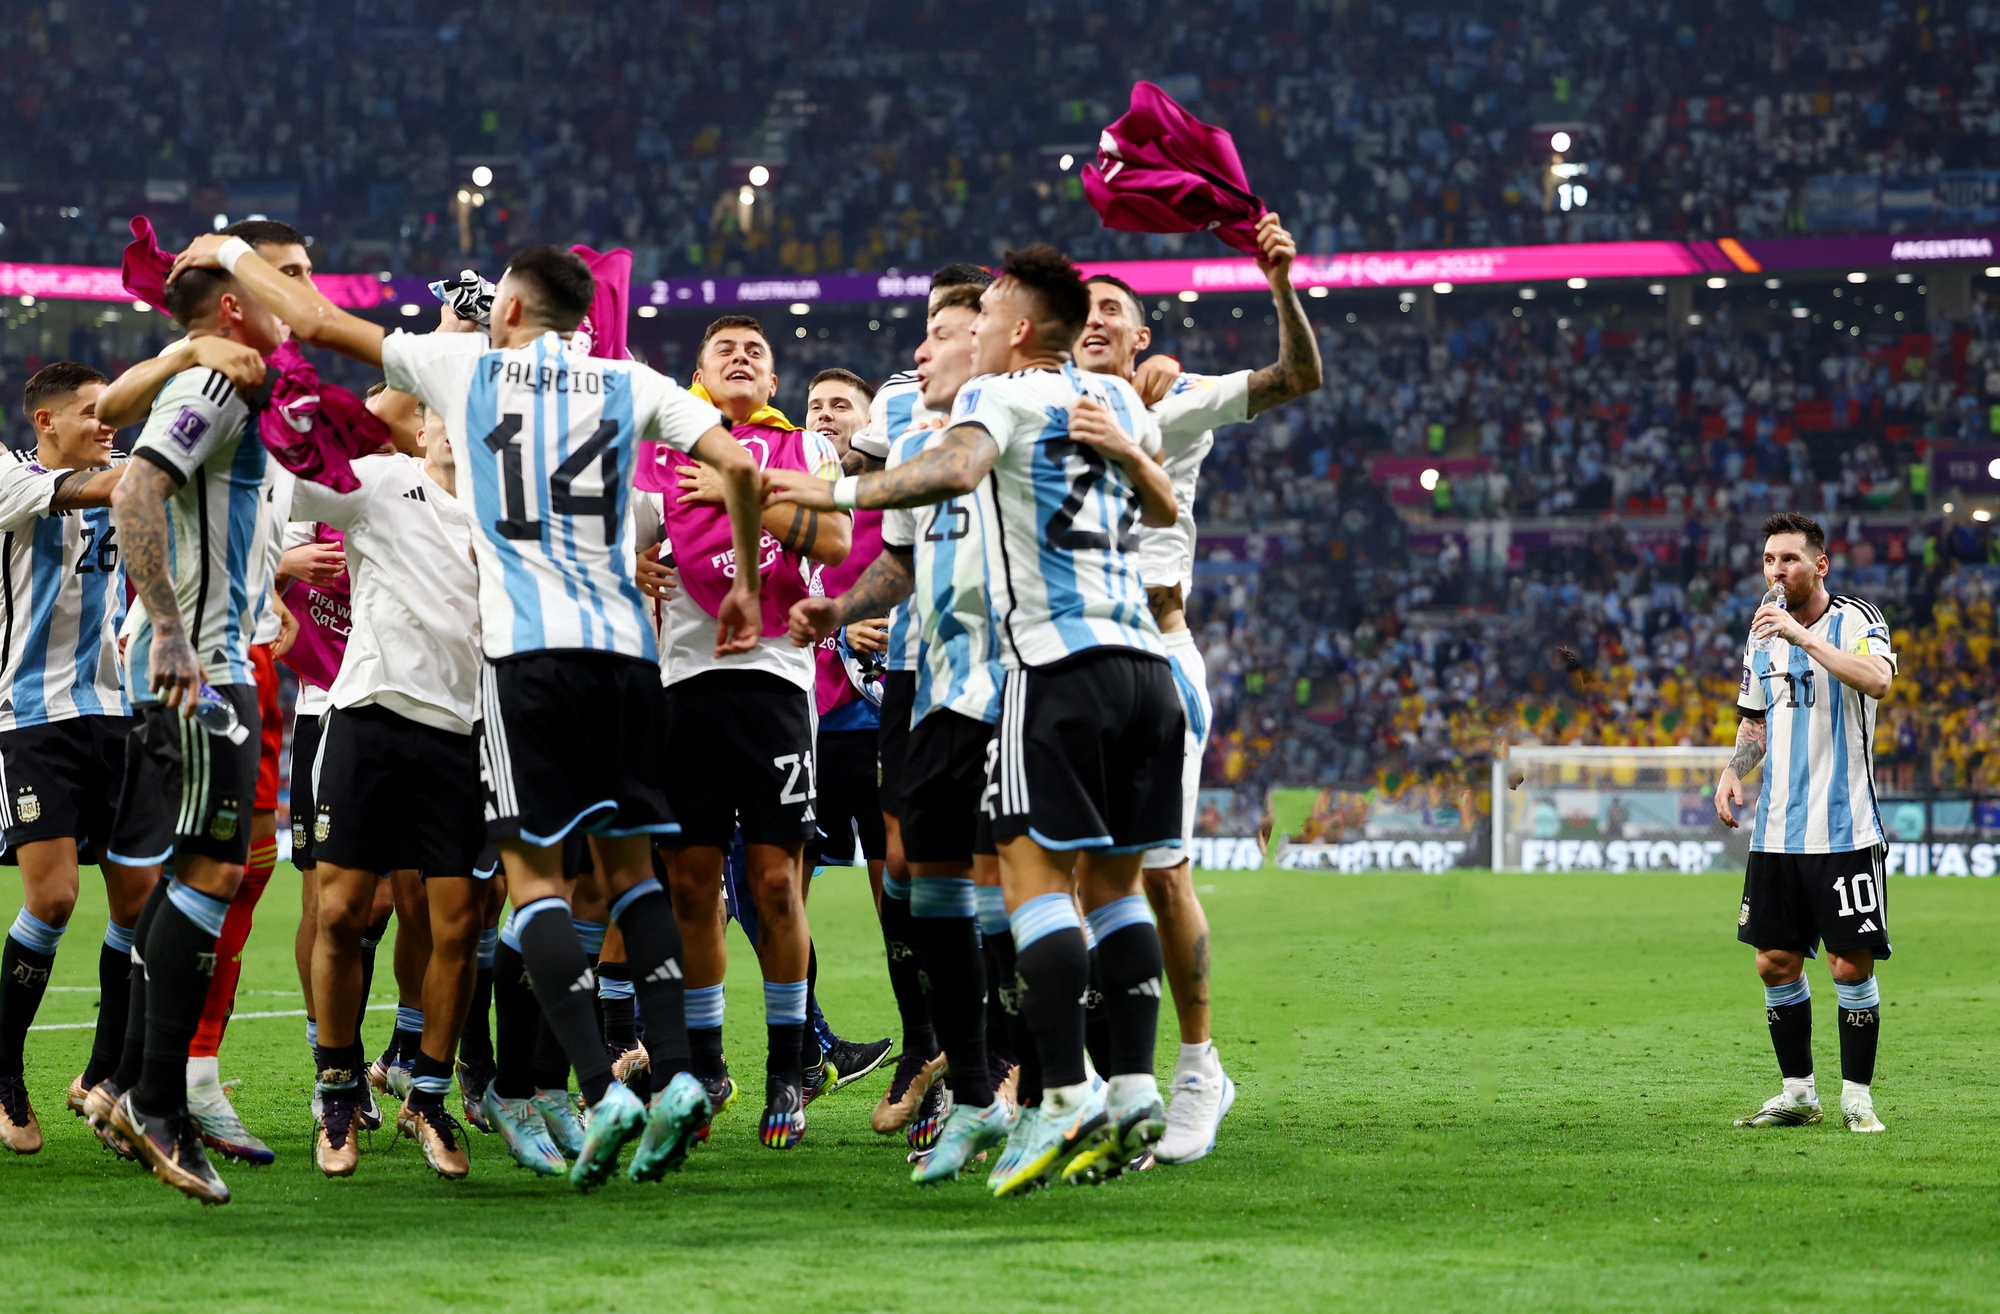 Hà Lan - Argentina: Trận đấu kinh điển giữa Hà Lan và Argentina được coi là một trong những trận đấu đáng xem nhất của lịch sử bóng đá. Xem bức ảnh liên quan để cảm nhận được những khoảnh khắc đẹp nhất của trận đấu đó.